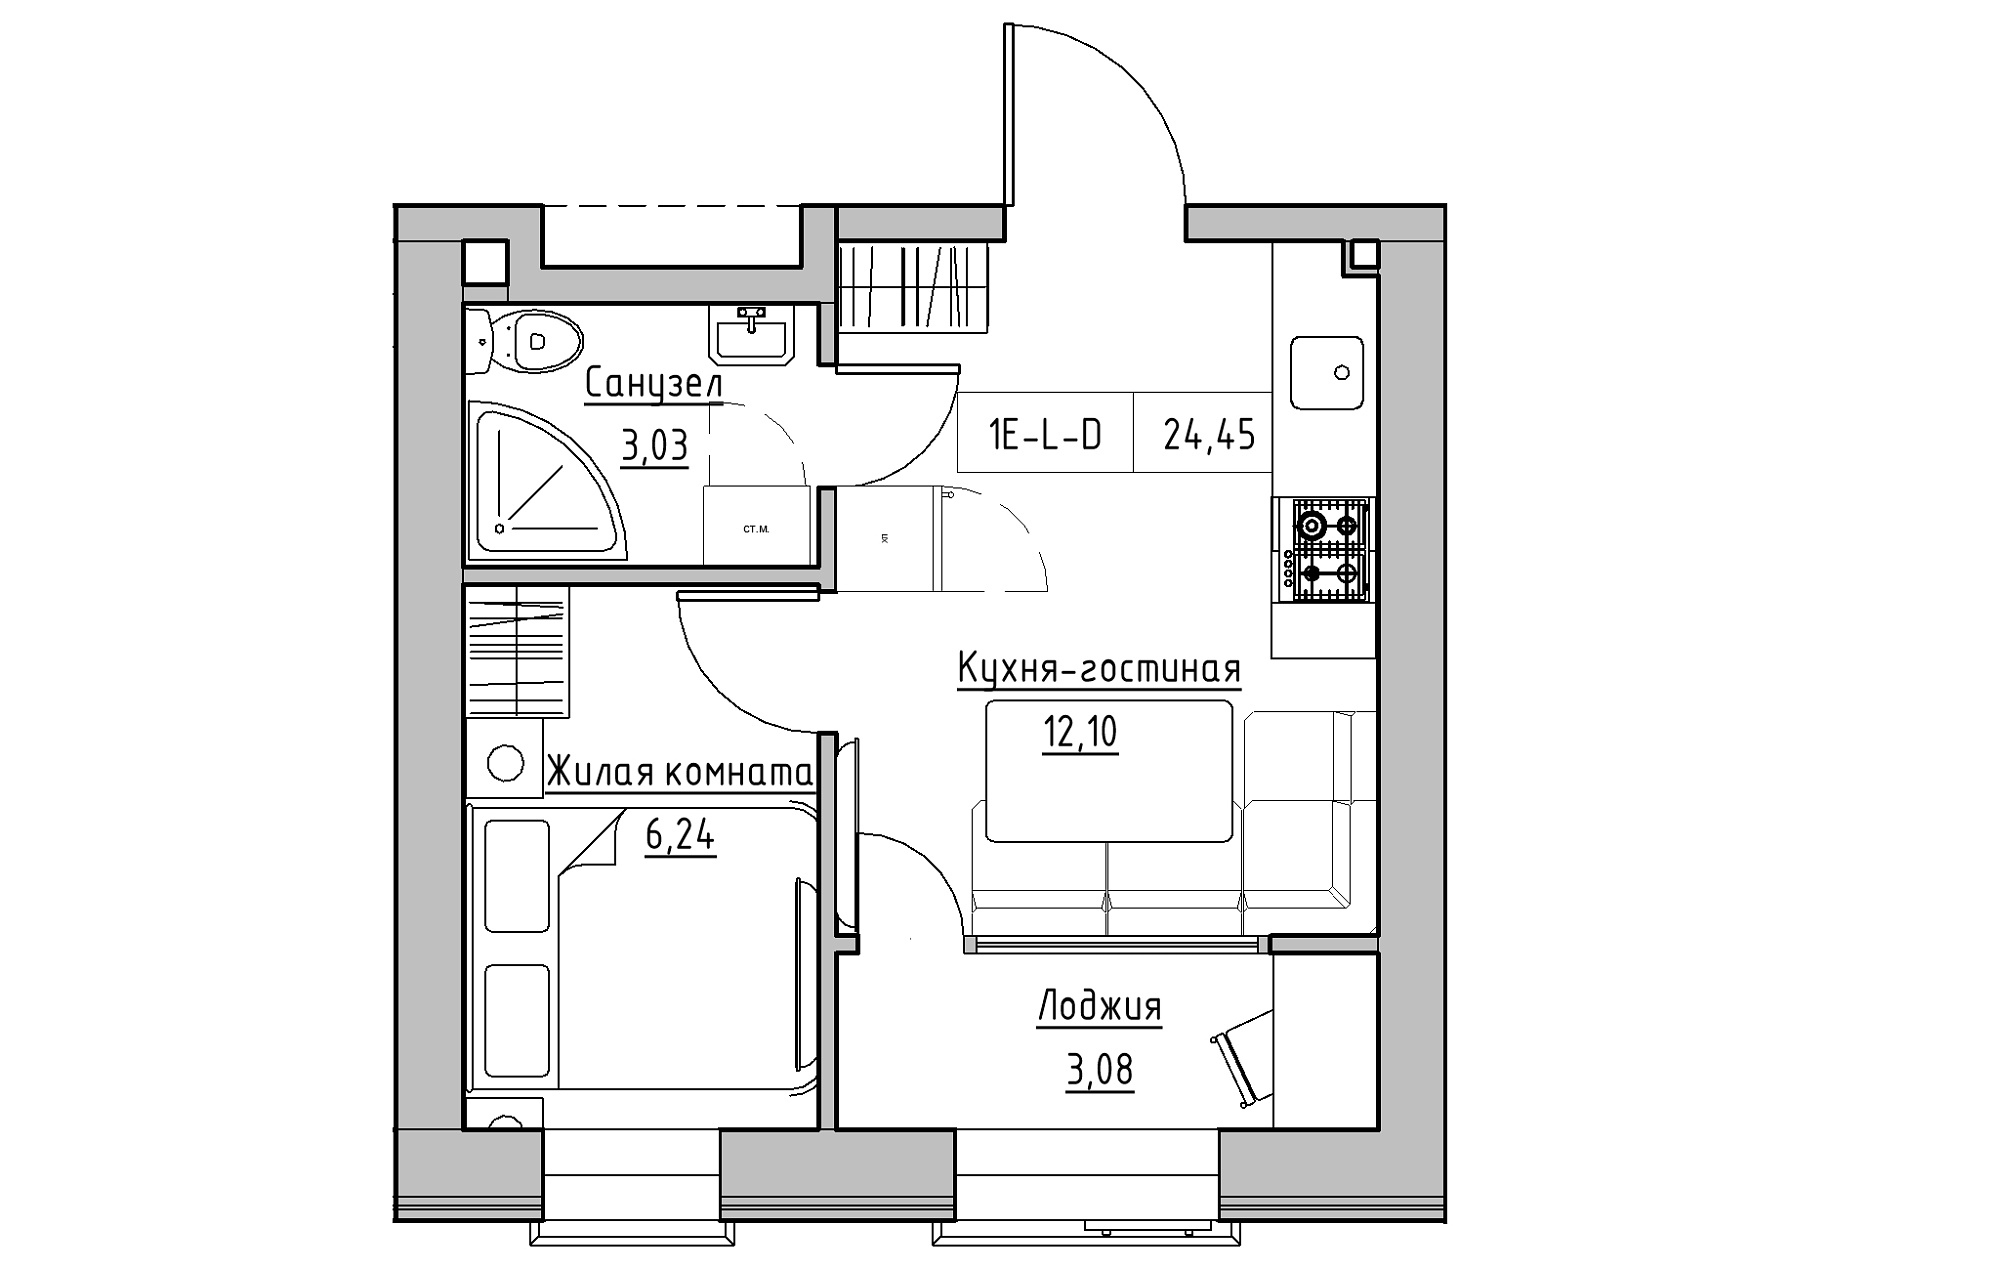 Планировка 1-к квартира площей 24.45м2, KS-018-04/0002.